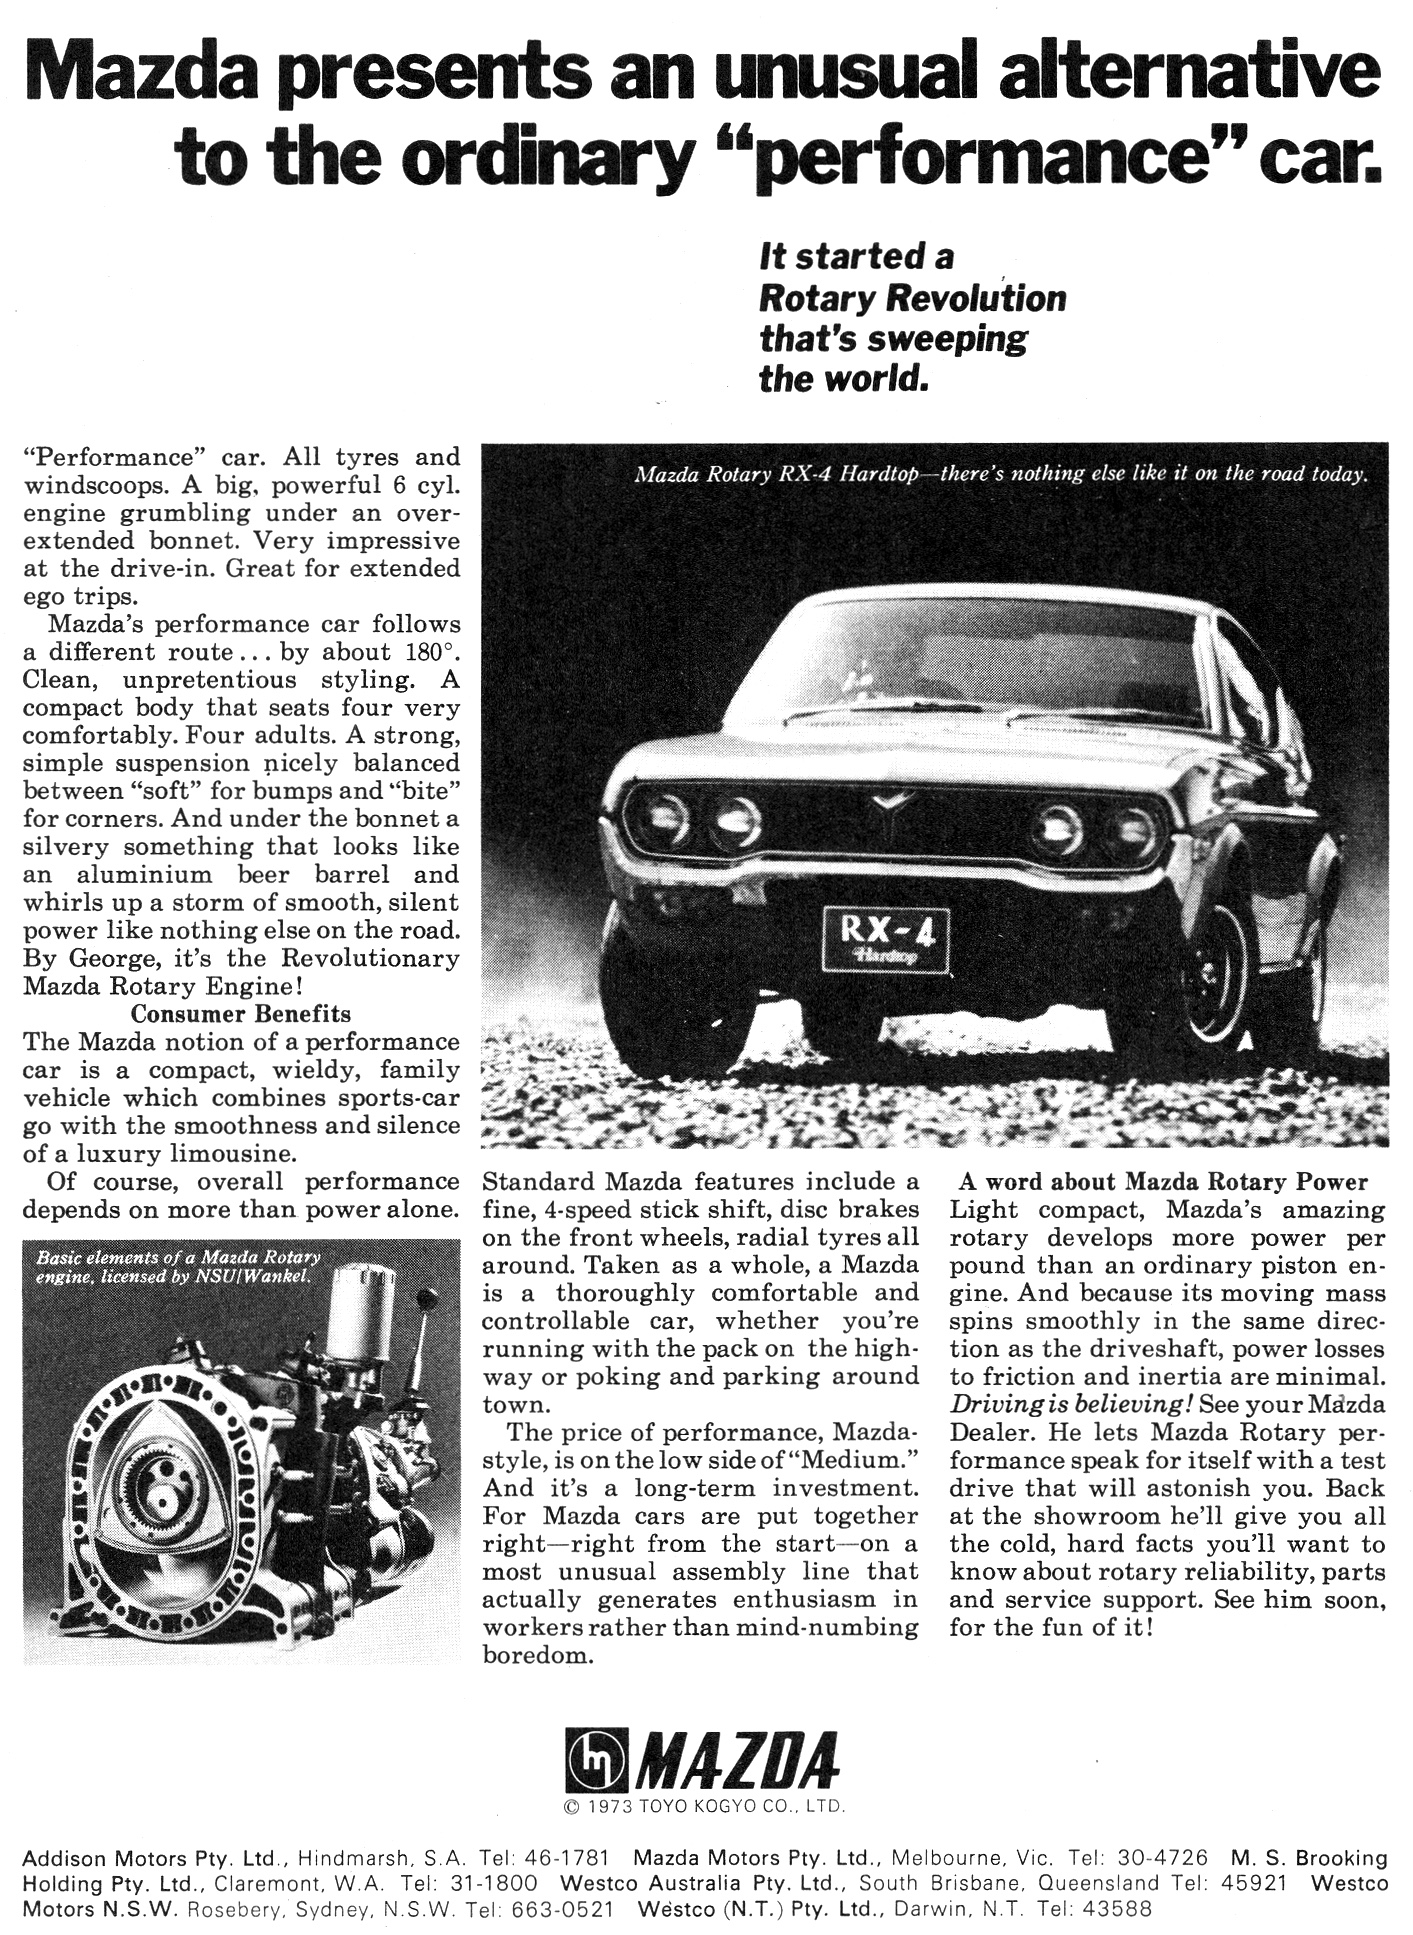 1973 Mazda RX-4 Rotary Hardtop